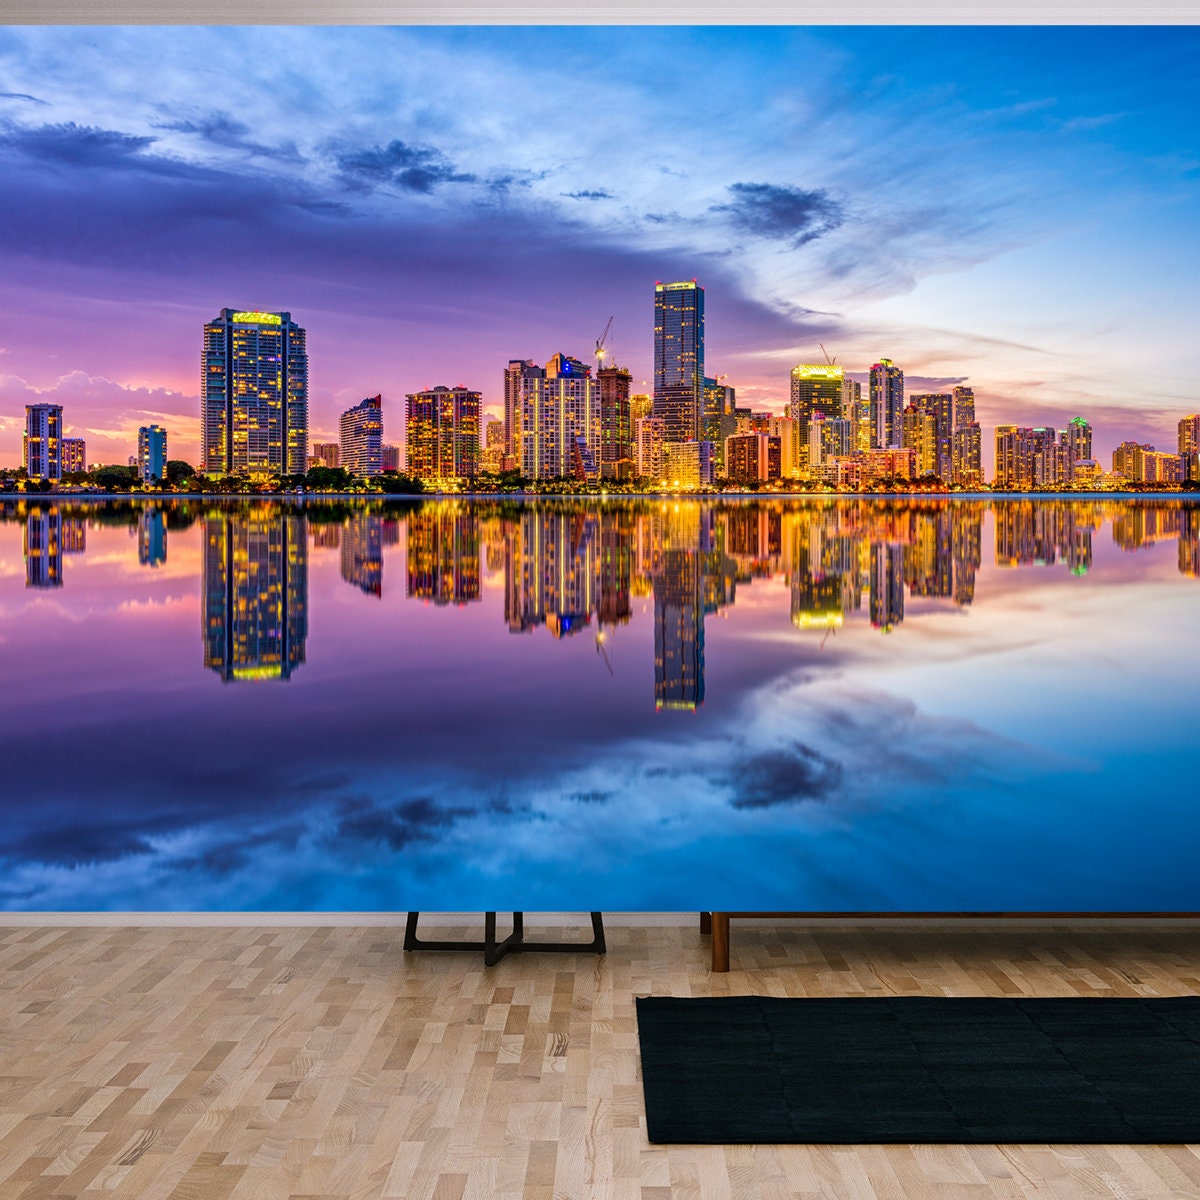 Miami, Florida, USA Skyline on Biscayne Bay Wallpaper Living Room Mural